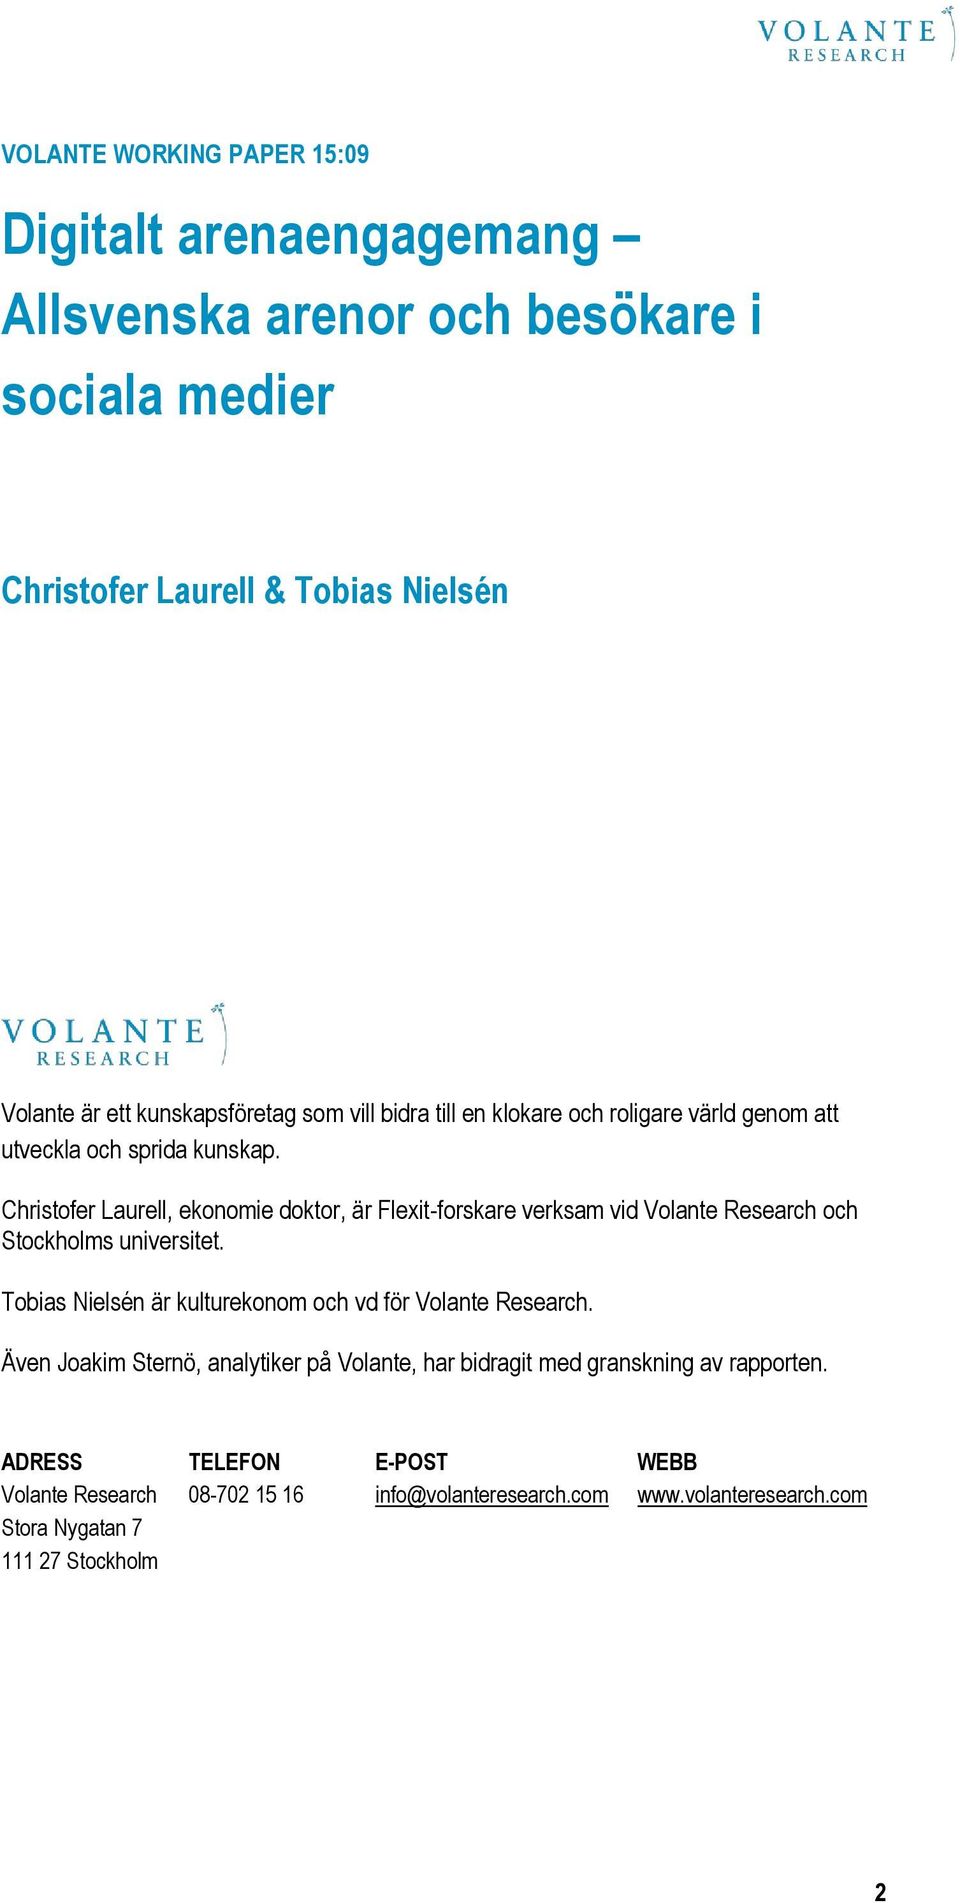 Christofer Laurell, ekonomie doktor, är Flexit-forskare verksam vid Volante Research och Stockholms universitet.